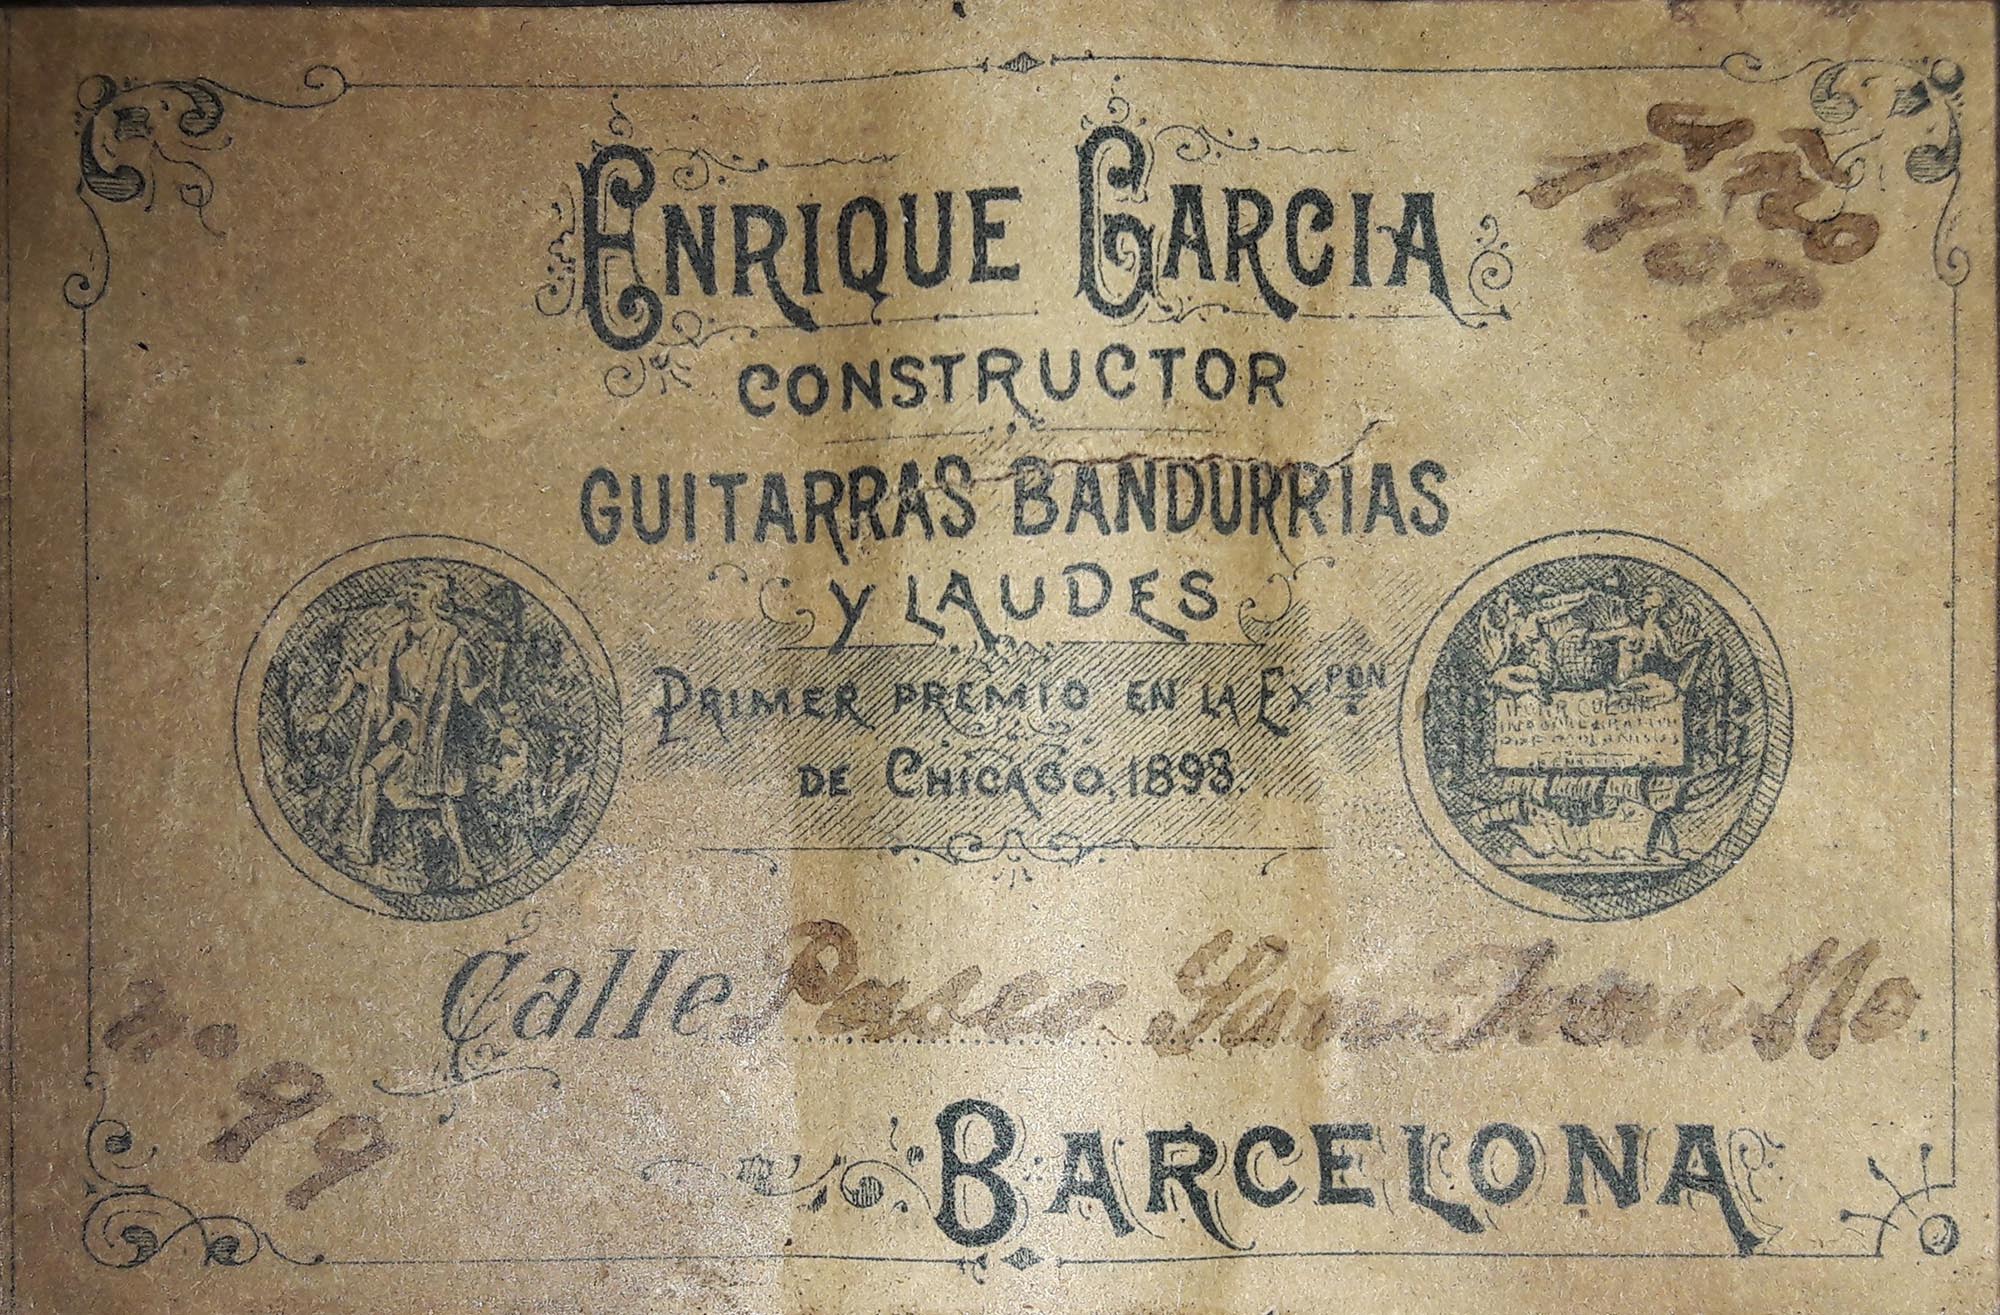 a enrique garcia 1909 21092018 label